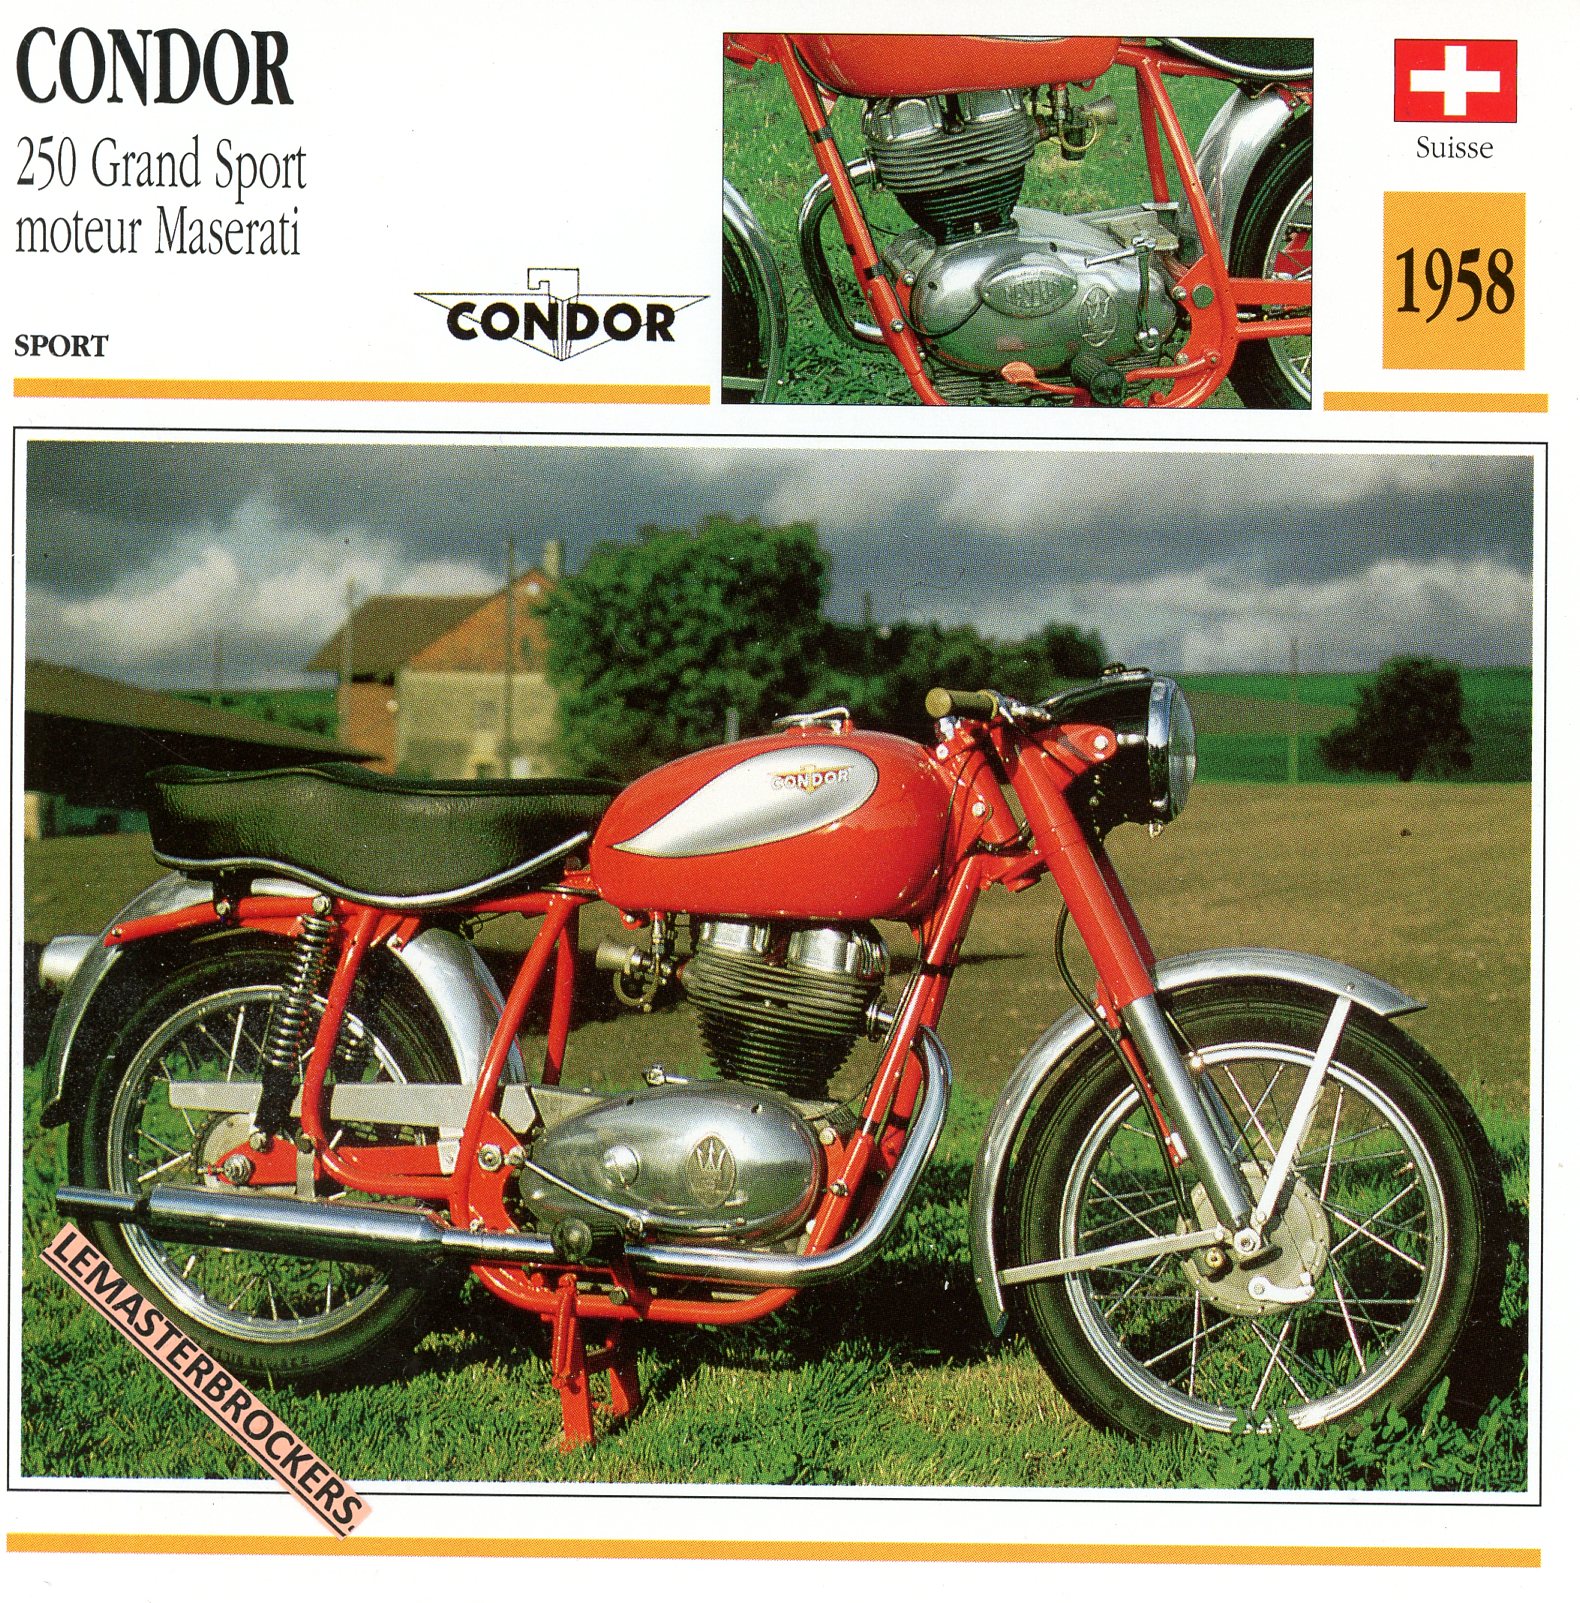 CONDOR-250-MASERATI-1958-FICHE-MOTO-ATLAS-lemasterbrockers-CARD-MOTORCYCLE